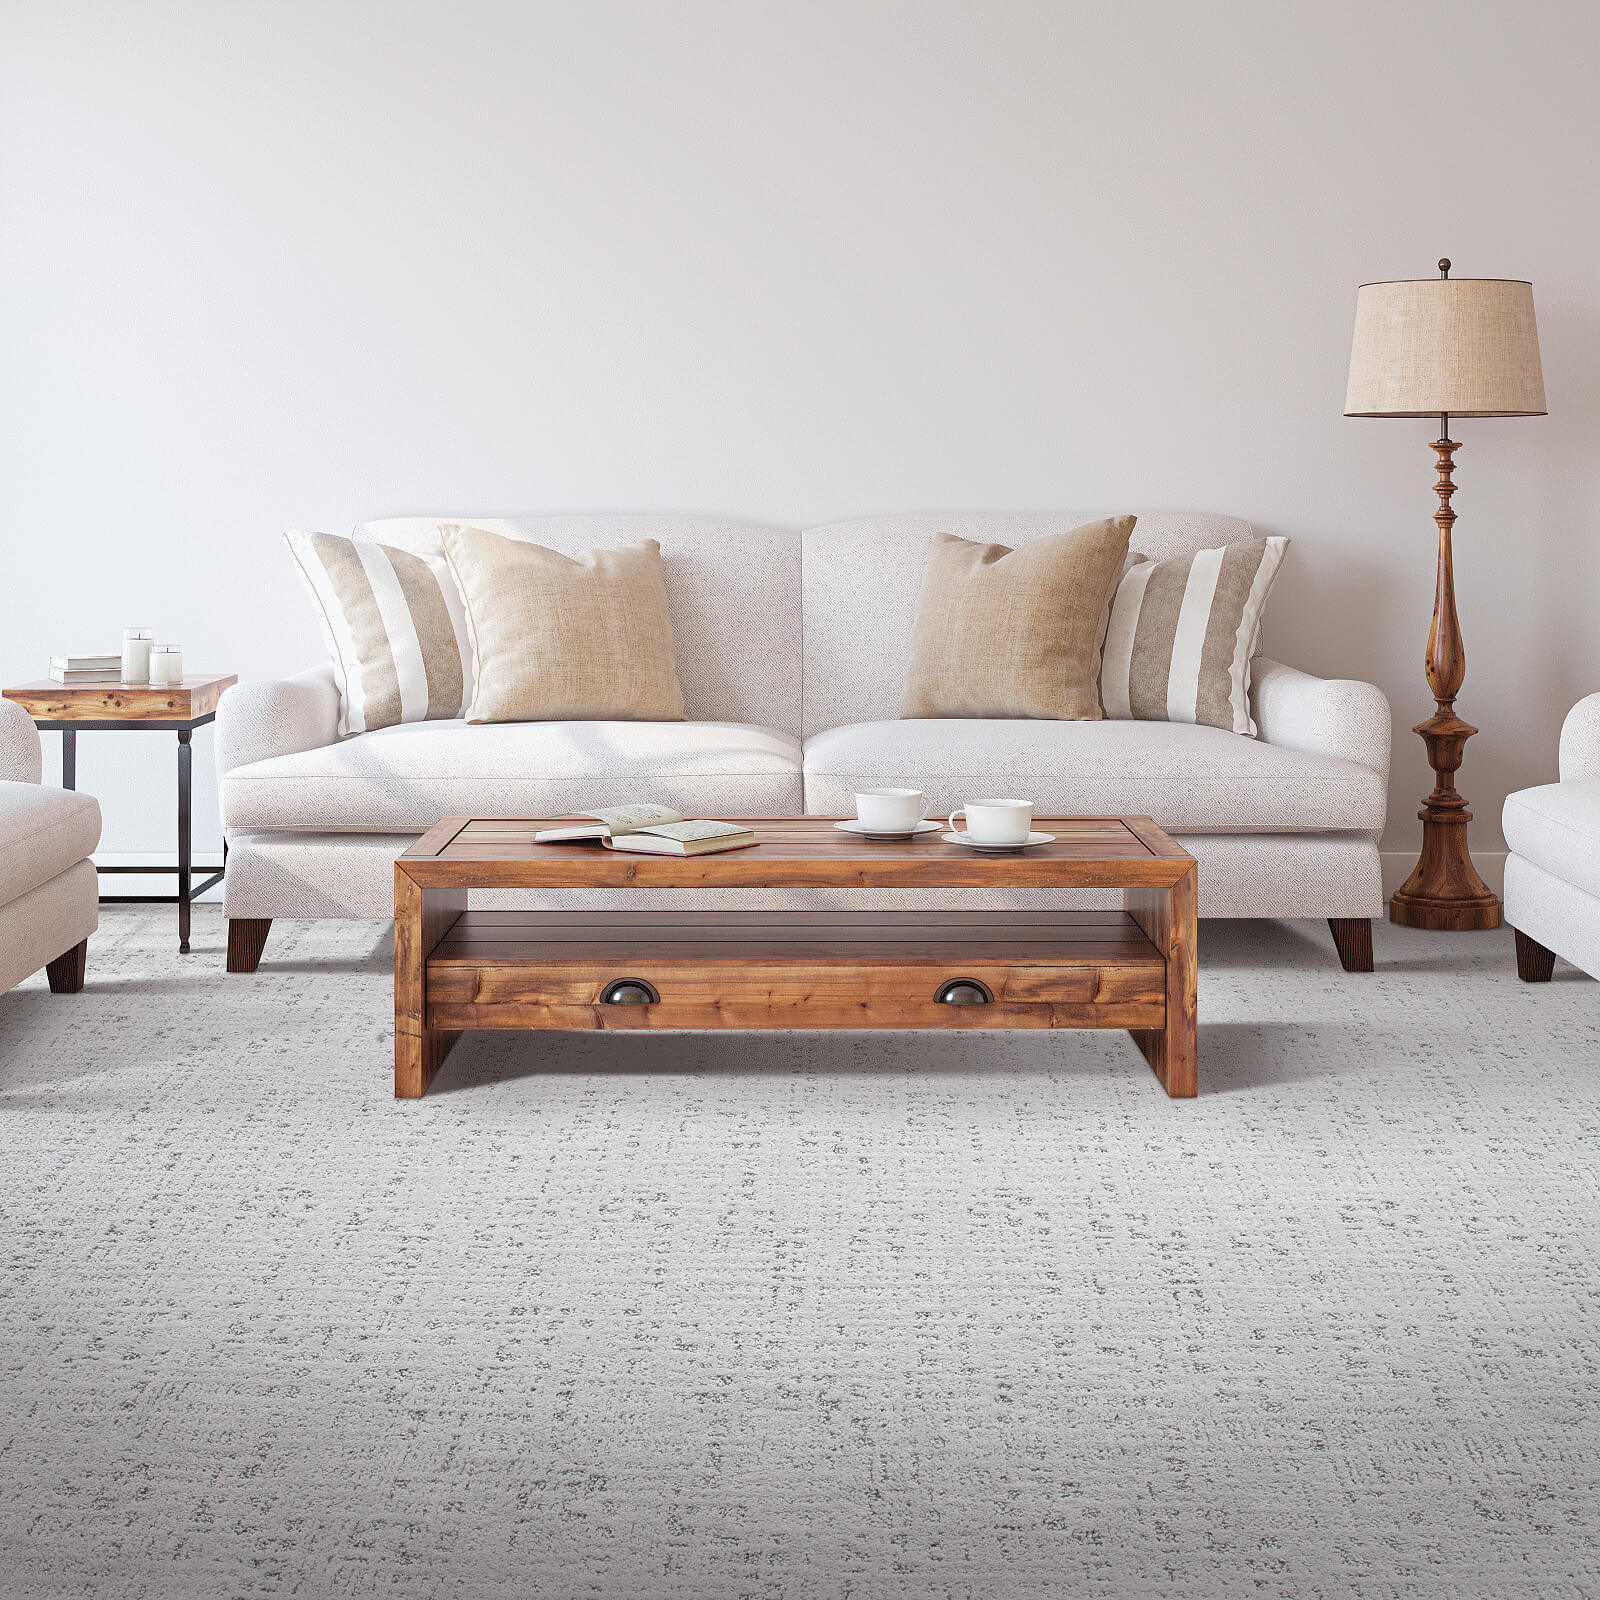 Carpet floor | Wellston Decorating Center, Inc.